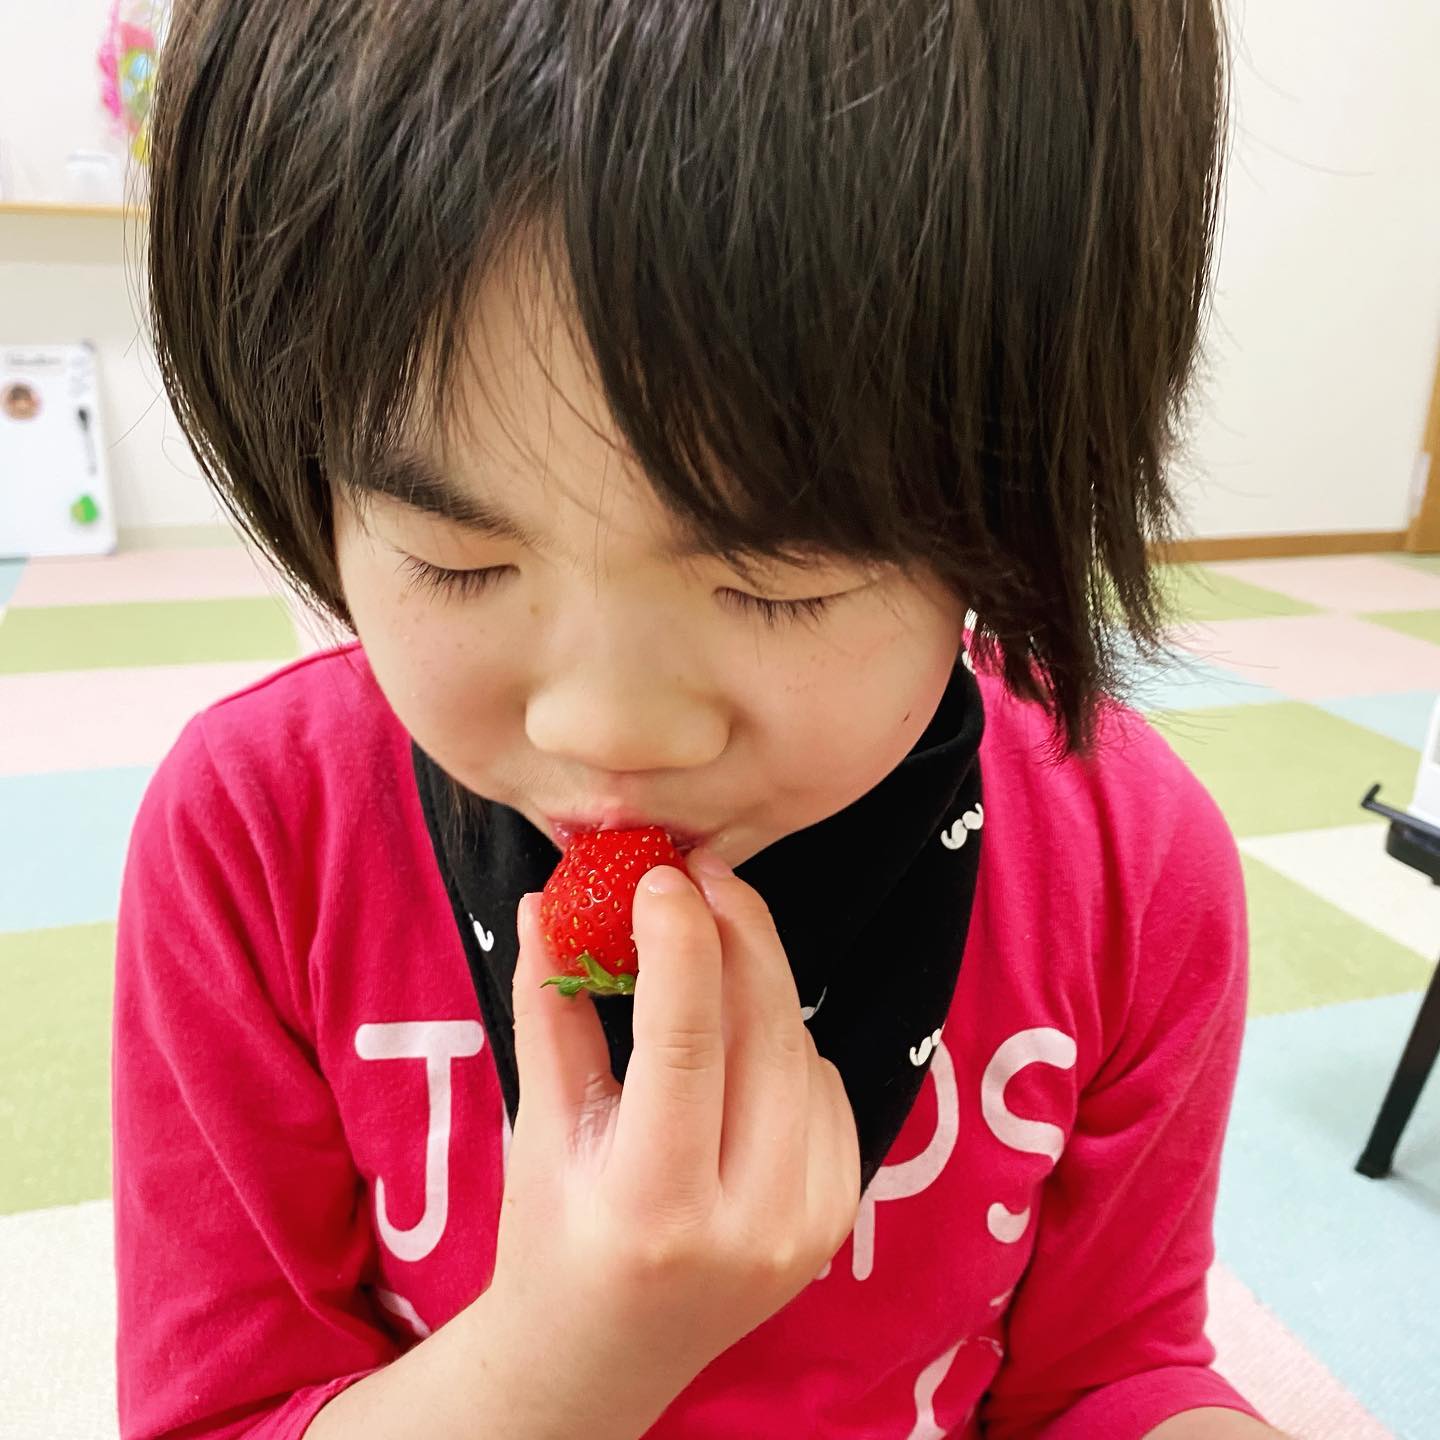 先日、おやつに苺を食べました🍓page-visual 先日、おやつに苺を食べました🍓ビジュアル